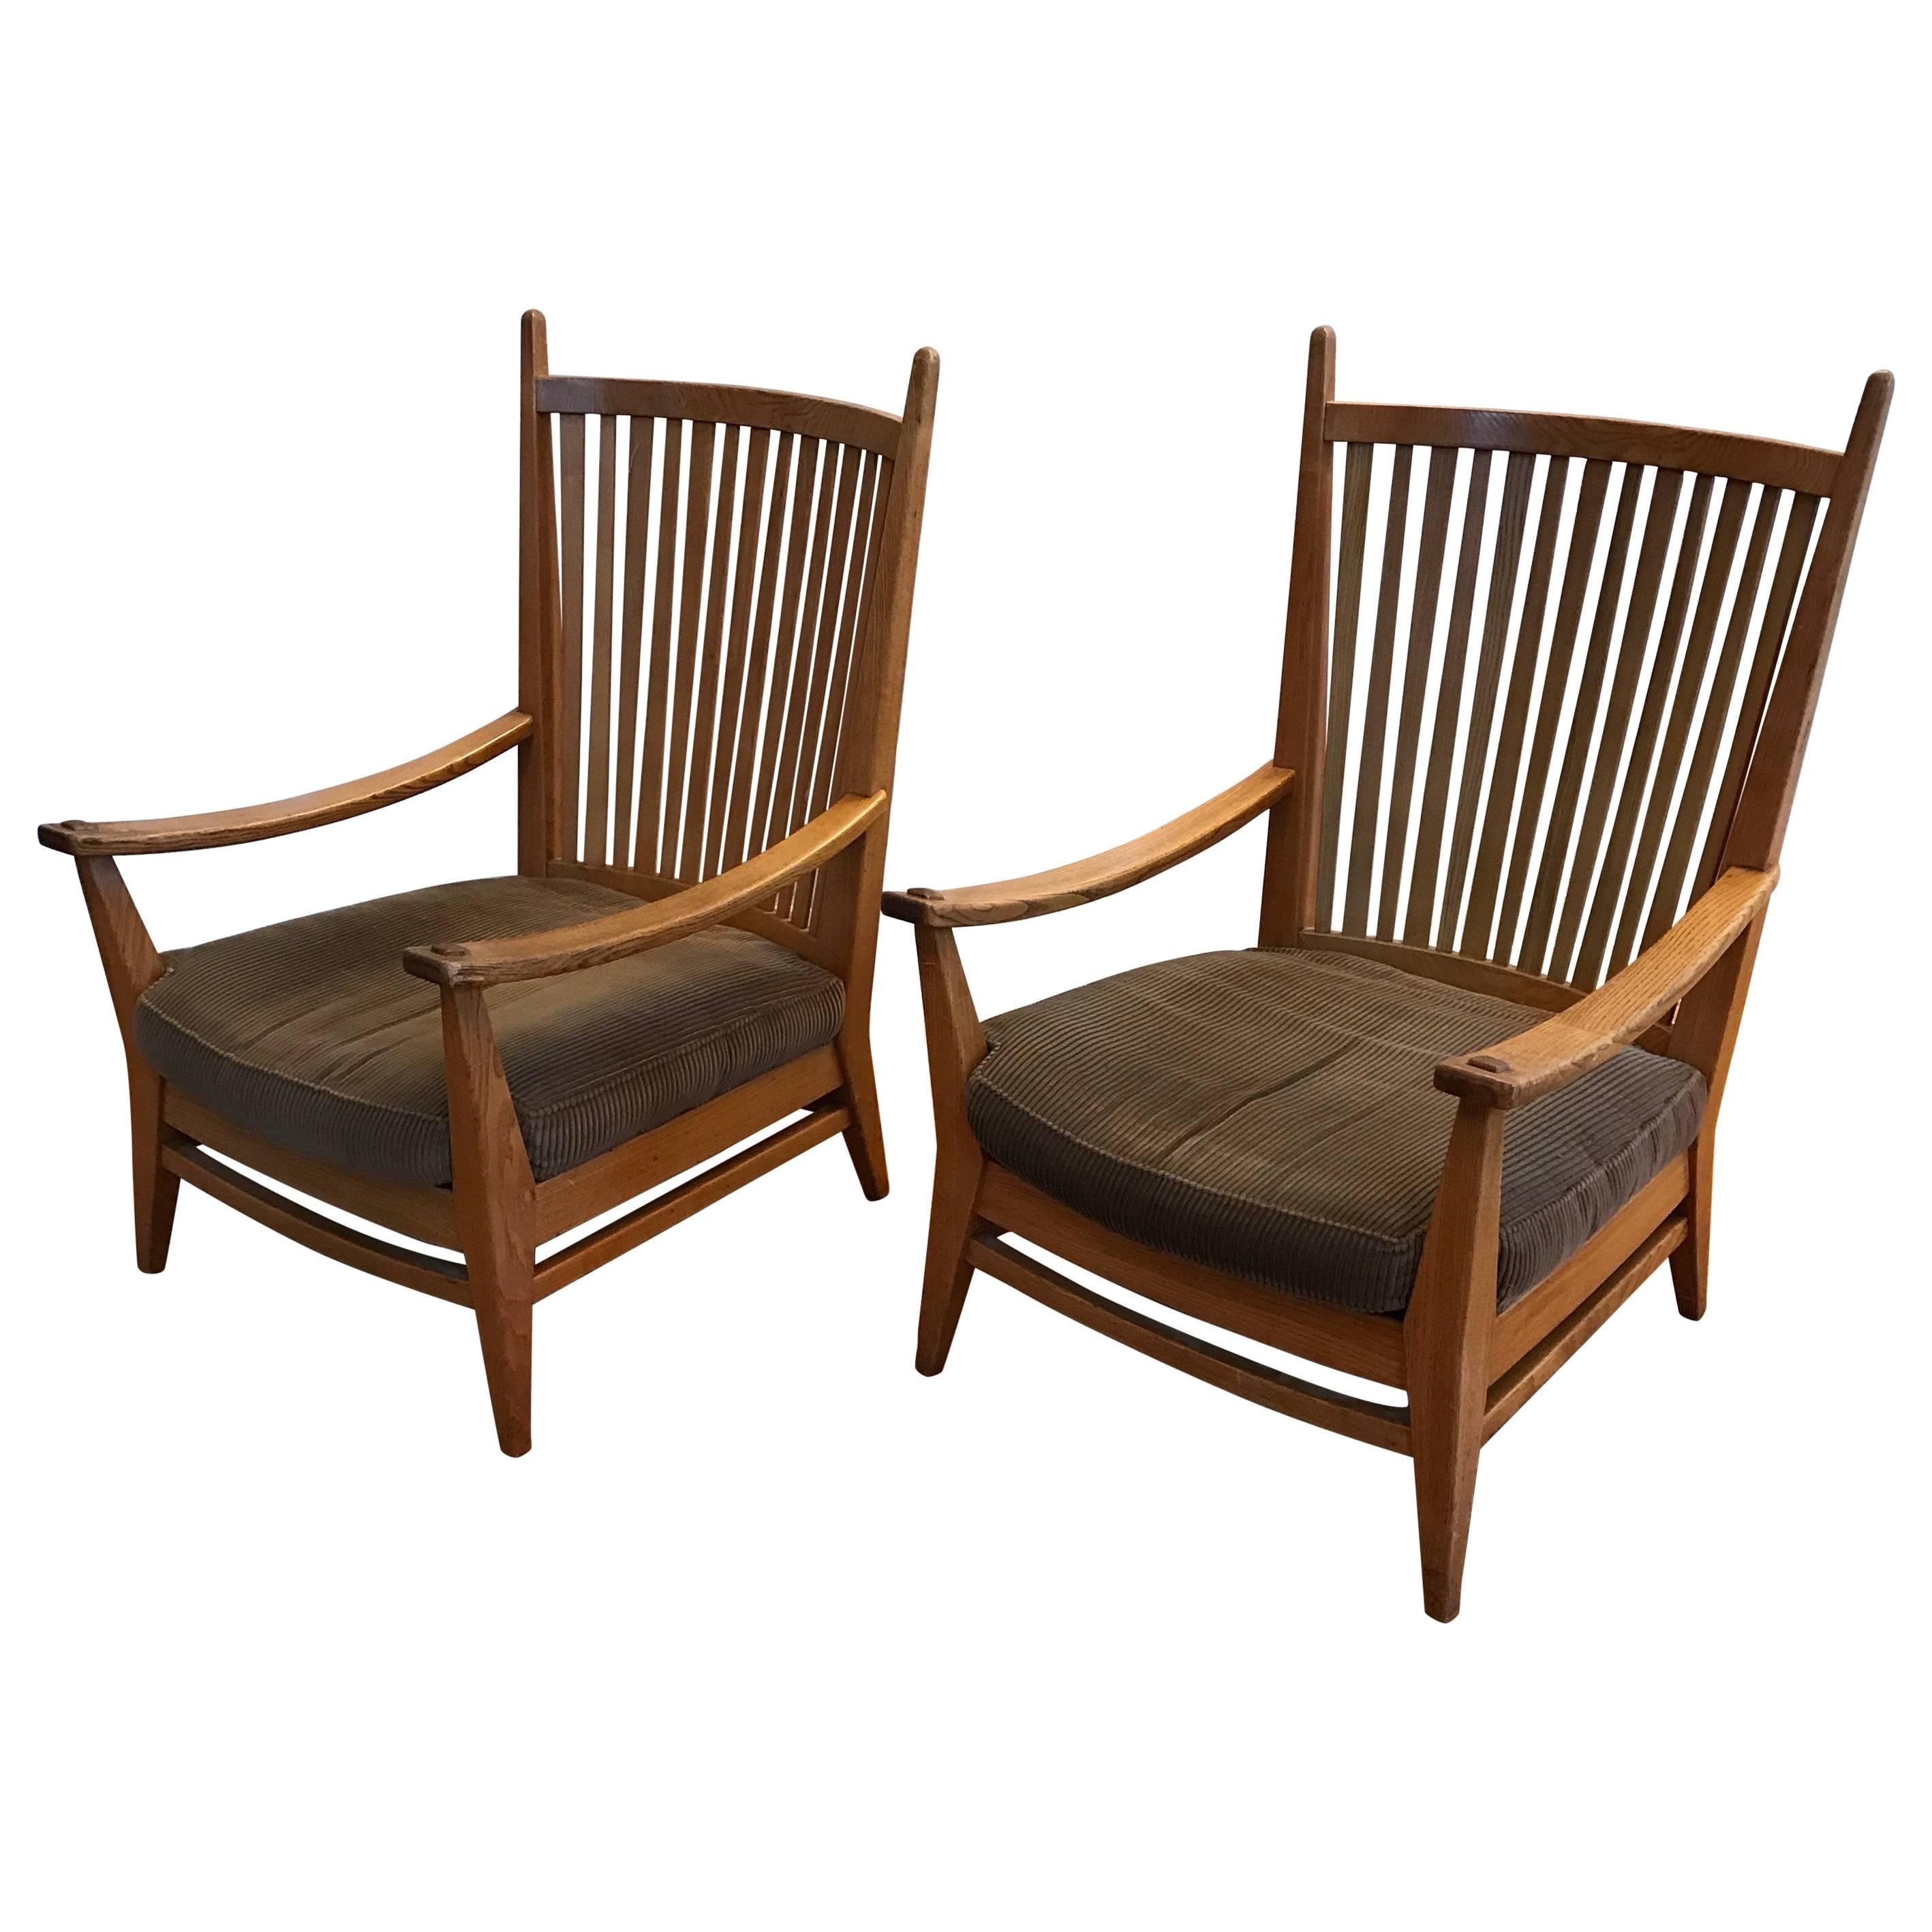 Niederländisches Kunsthandwerksdesign, elegante Loungesessel aus Eiche.

Diese sehr stilvollen Stühle wurden von der niederländischen Design-Ikone Bas Van Pelt hergestellt und befinden sich in einem ausgezeichneten Zustand. Der handgefertigte